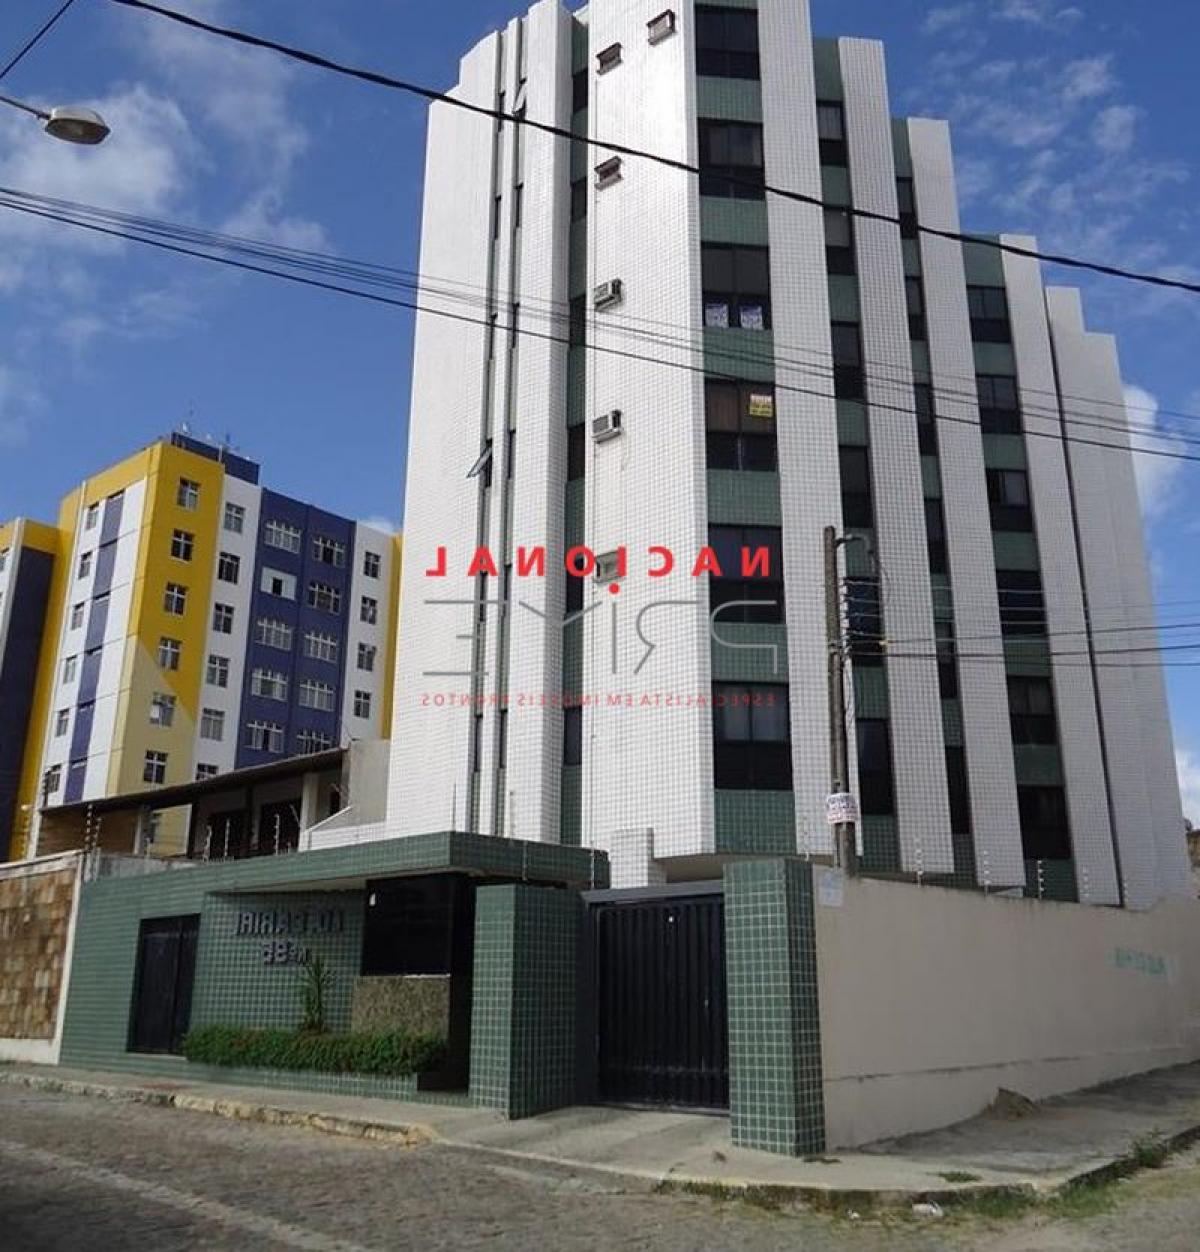 Picture of Apartment For Sale in Rio Grande Do Norte, Rio Grande do Norte, Brazil